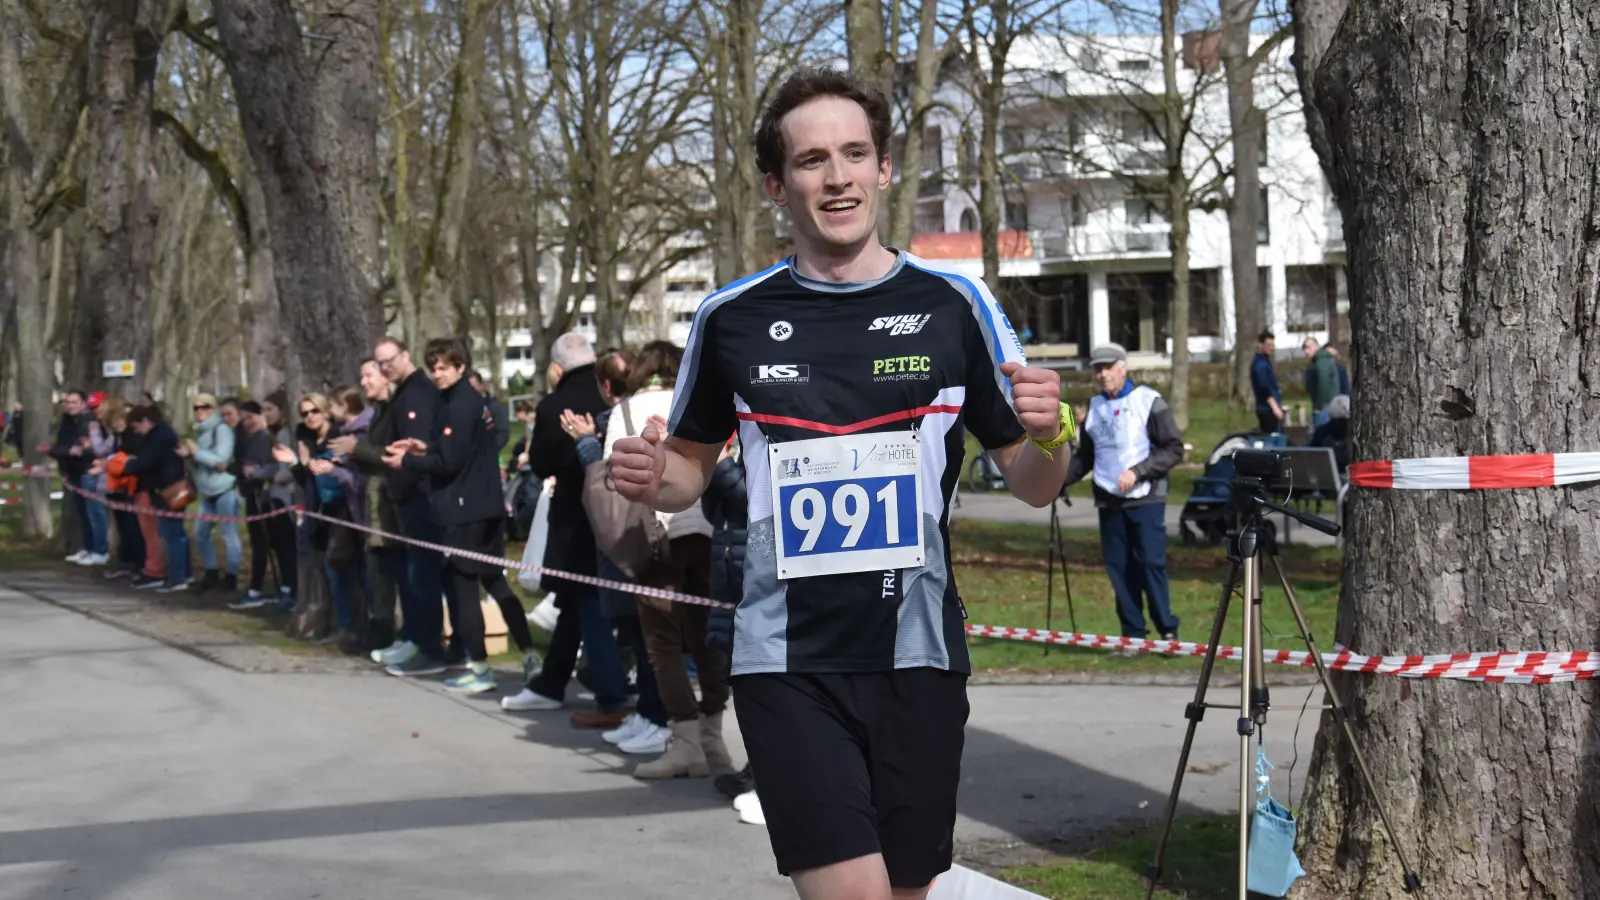 Einsames Rennen: Tom Bößendorfer entschied den 10-Kilometer-Lauf souverän für sich. (Foto: Jörg Behrendt)